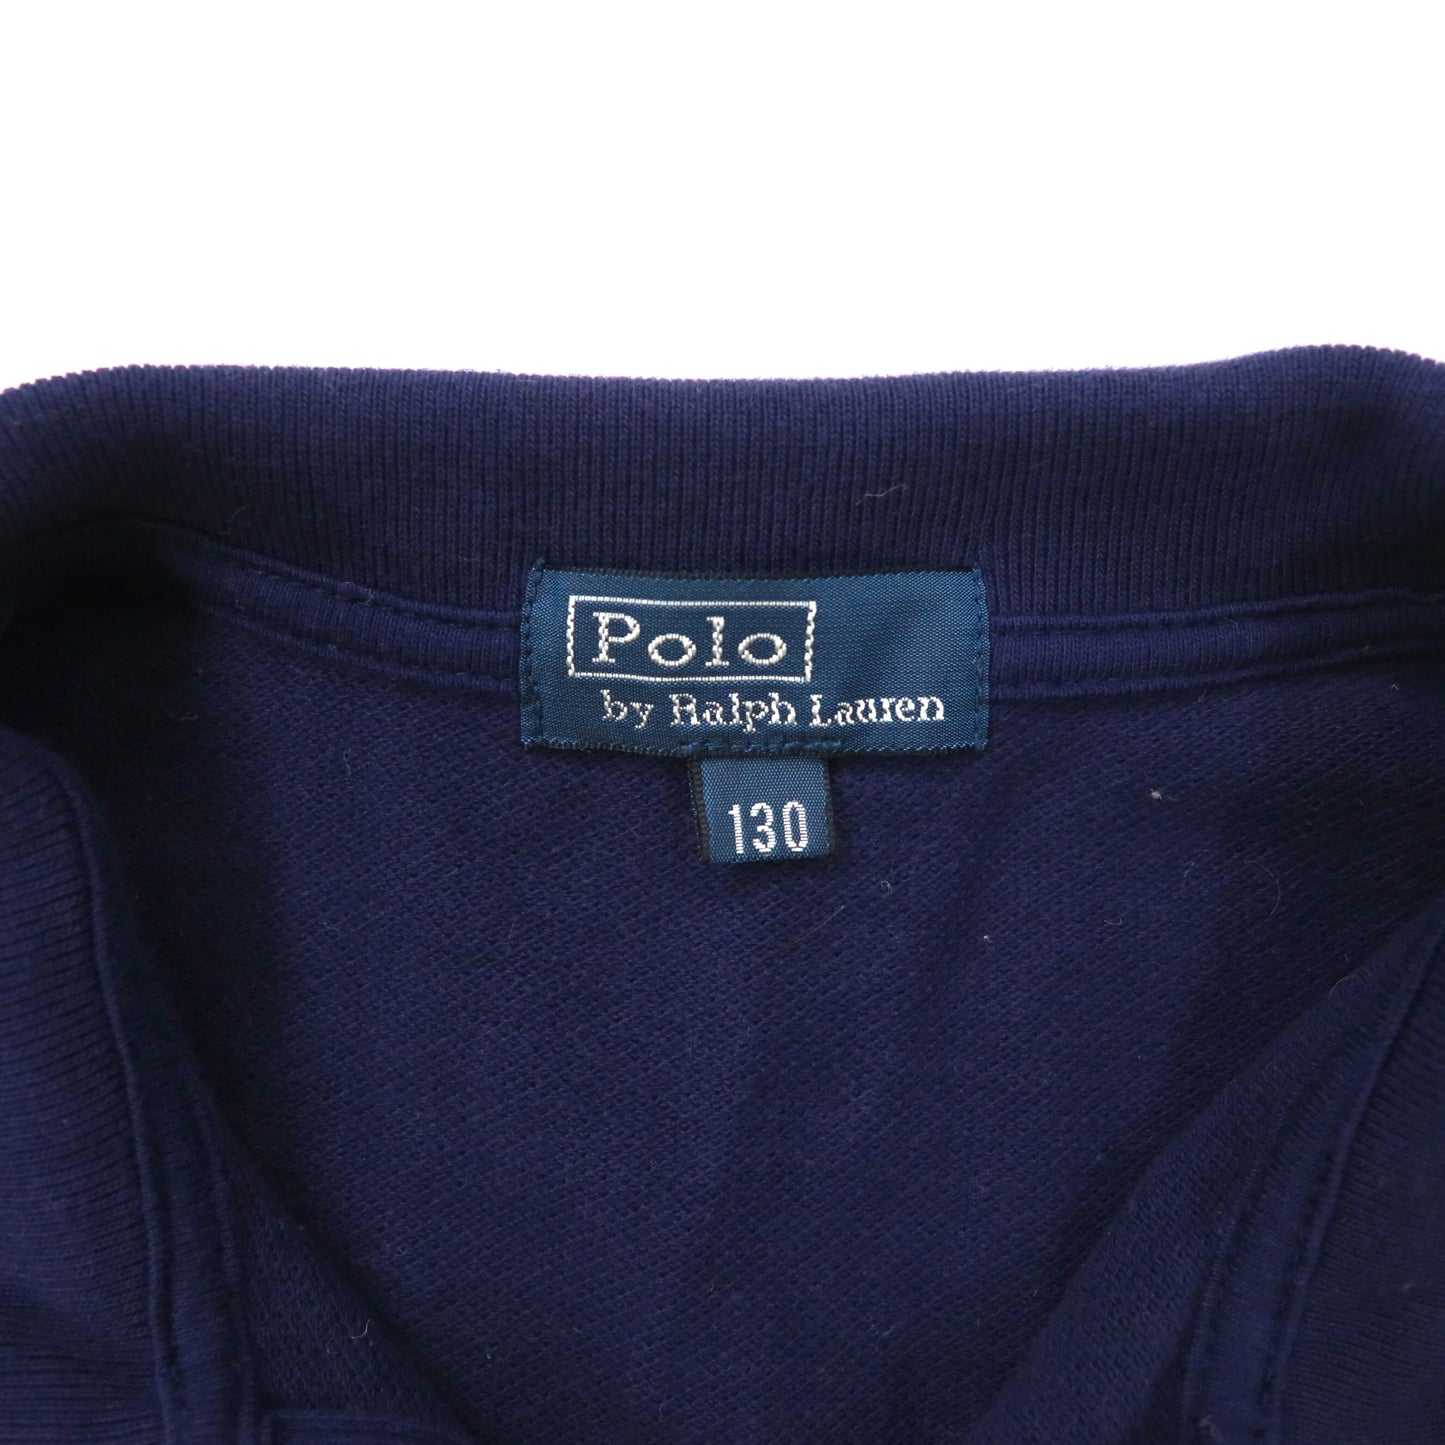 Polo by Ralph Lauren トラックジャケット 130 ネイビー コットン ビッグポニー刺繍